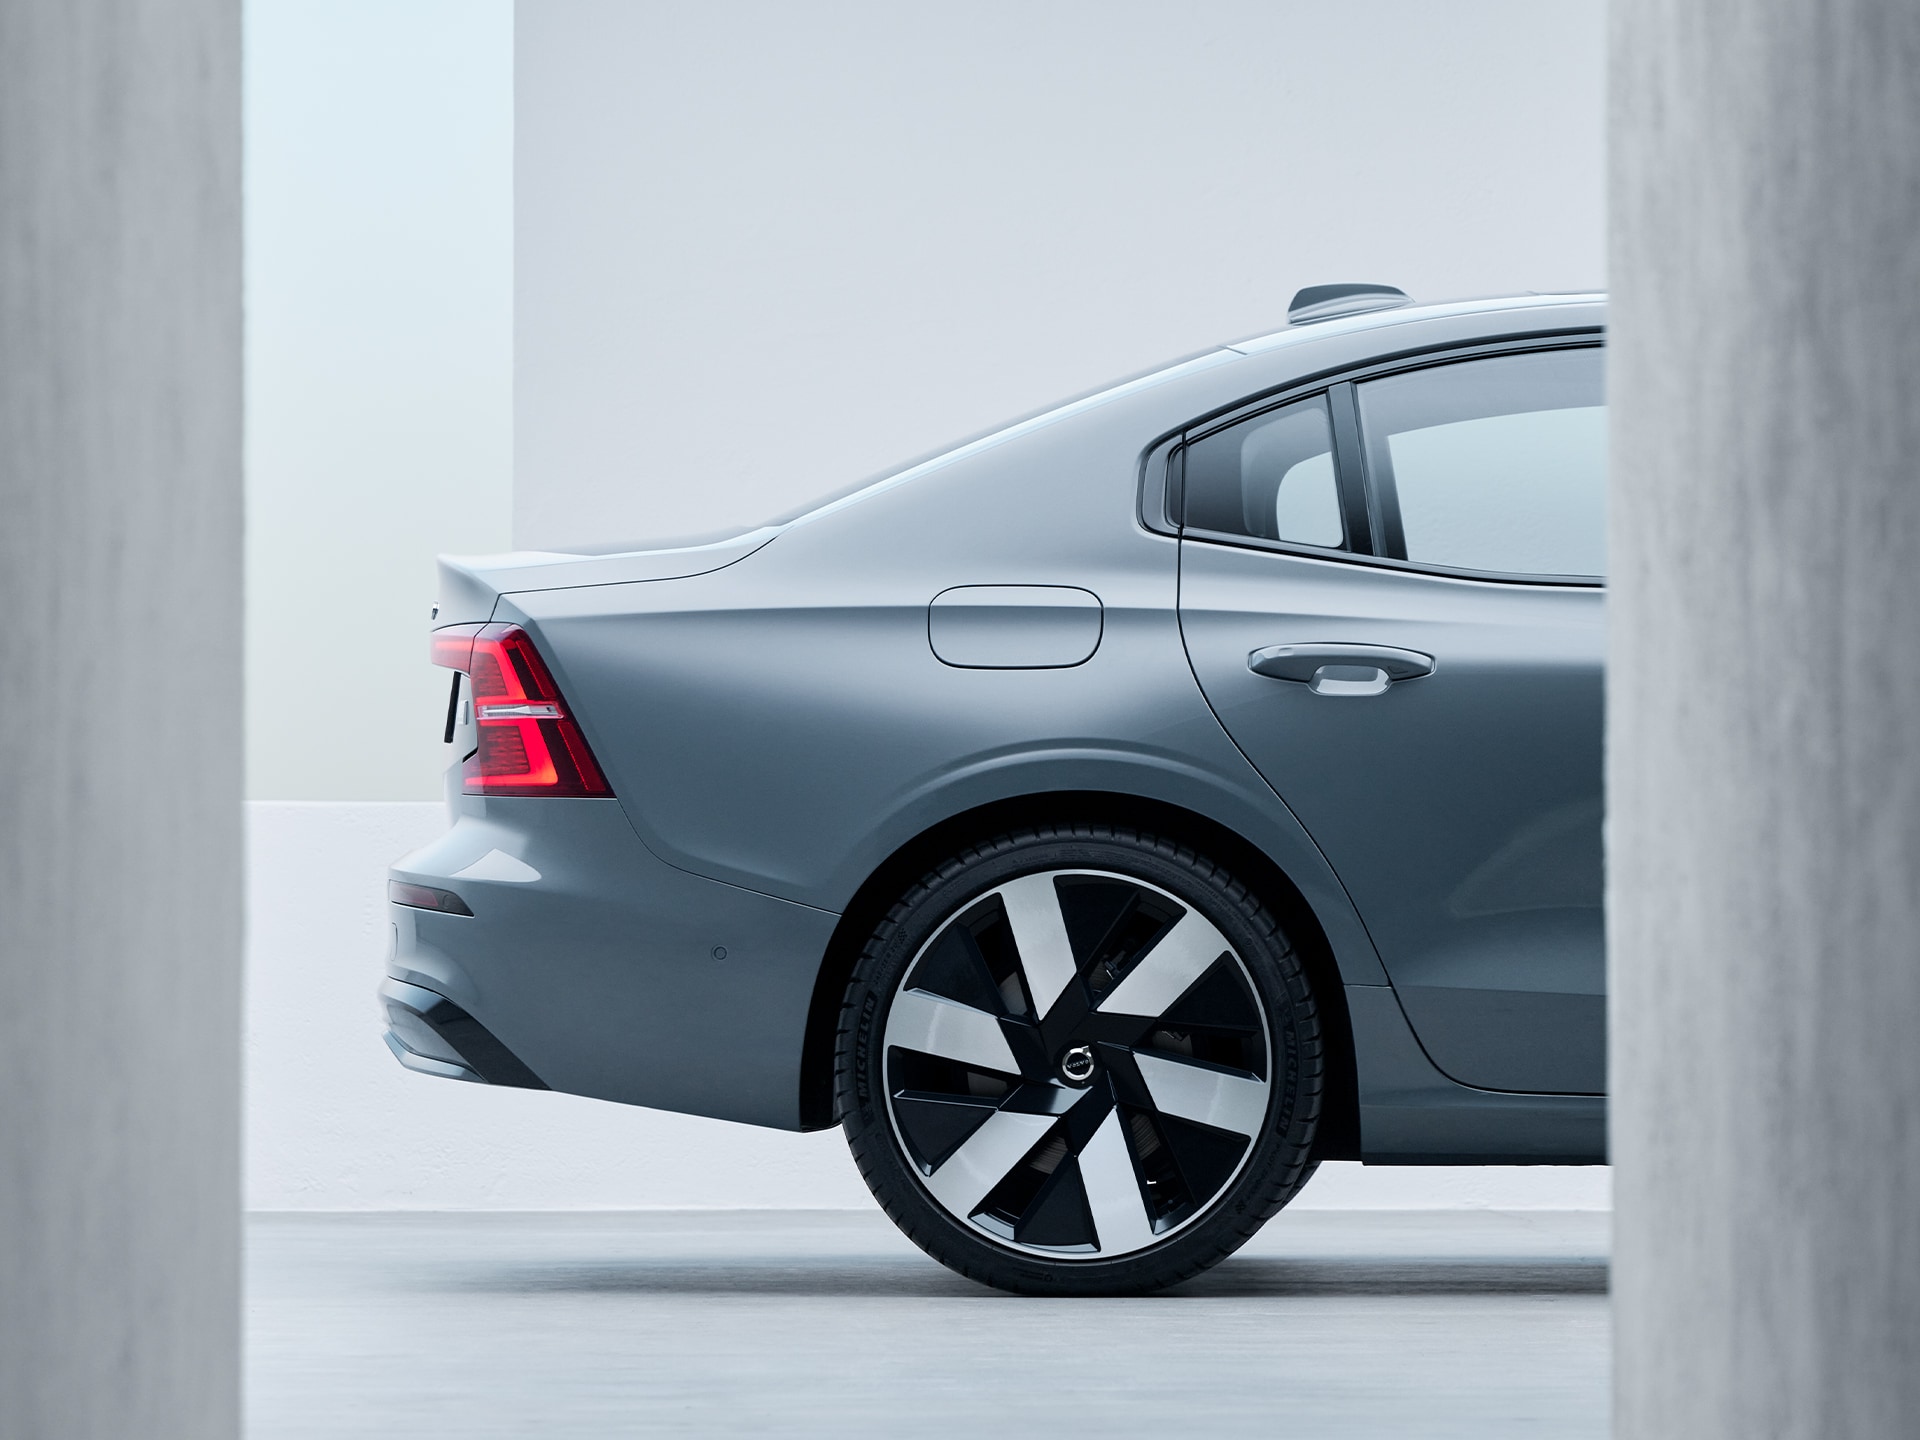 Nouveau design aérodynamique des jantes de la Volvo S60 Recharge.